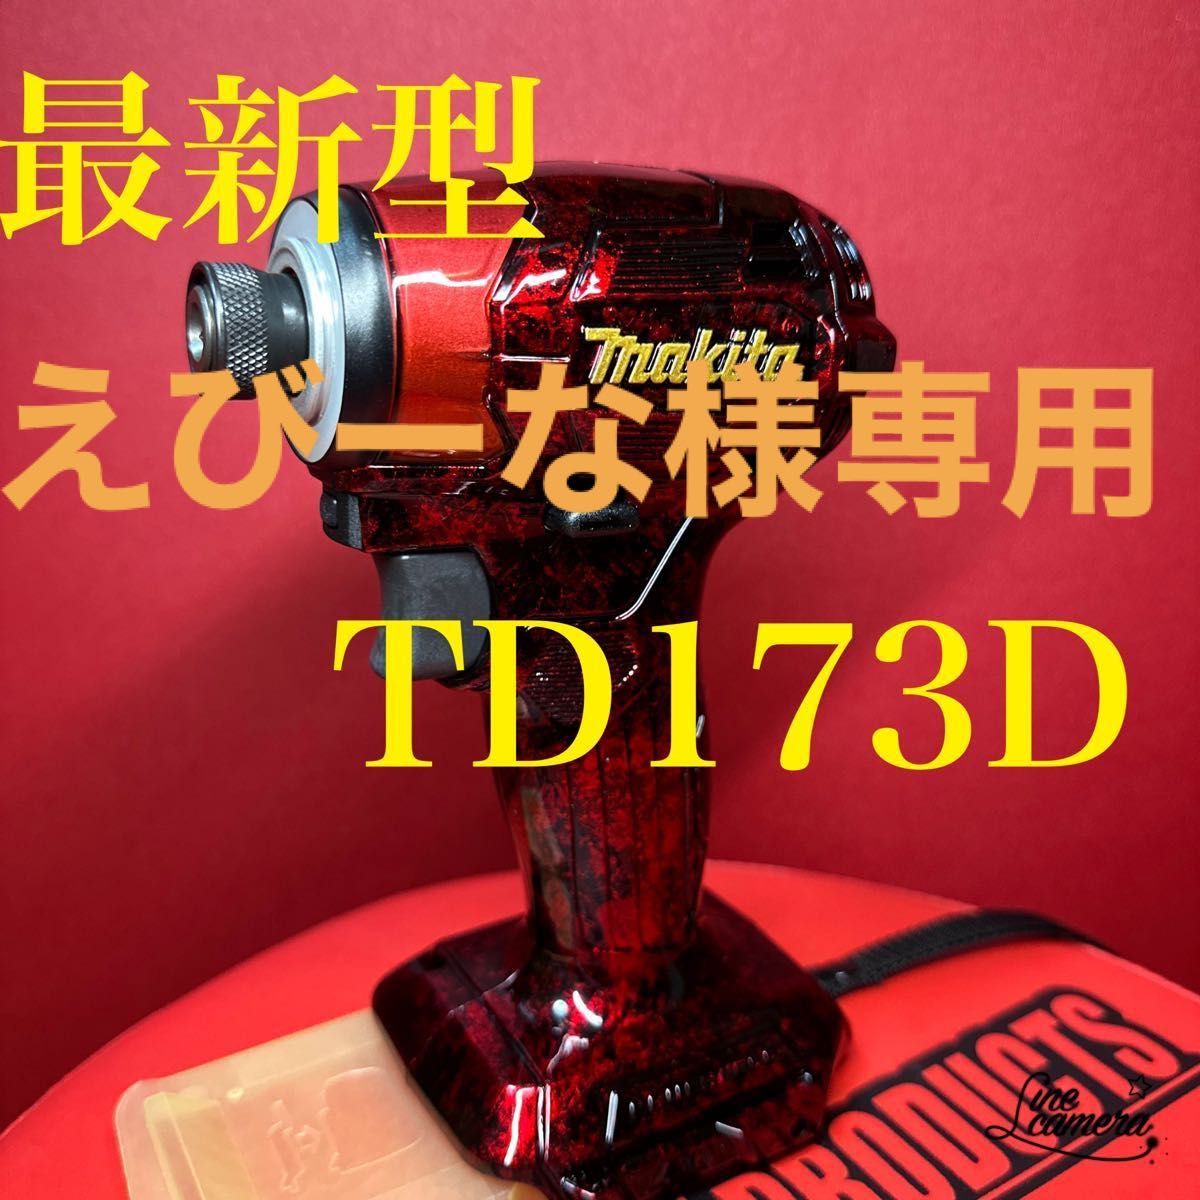 最新型 マキタインパクトドライバー TD173D スーパーカスタム｜PayPay